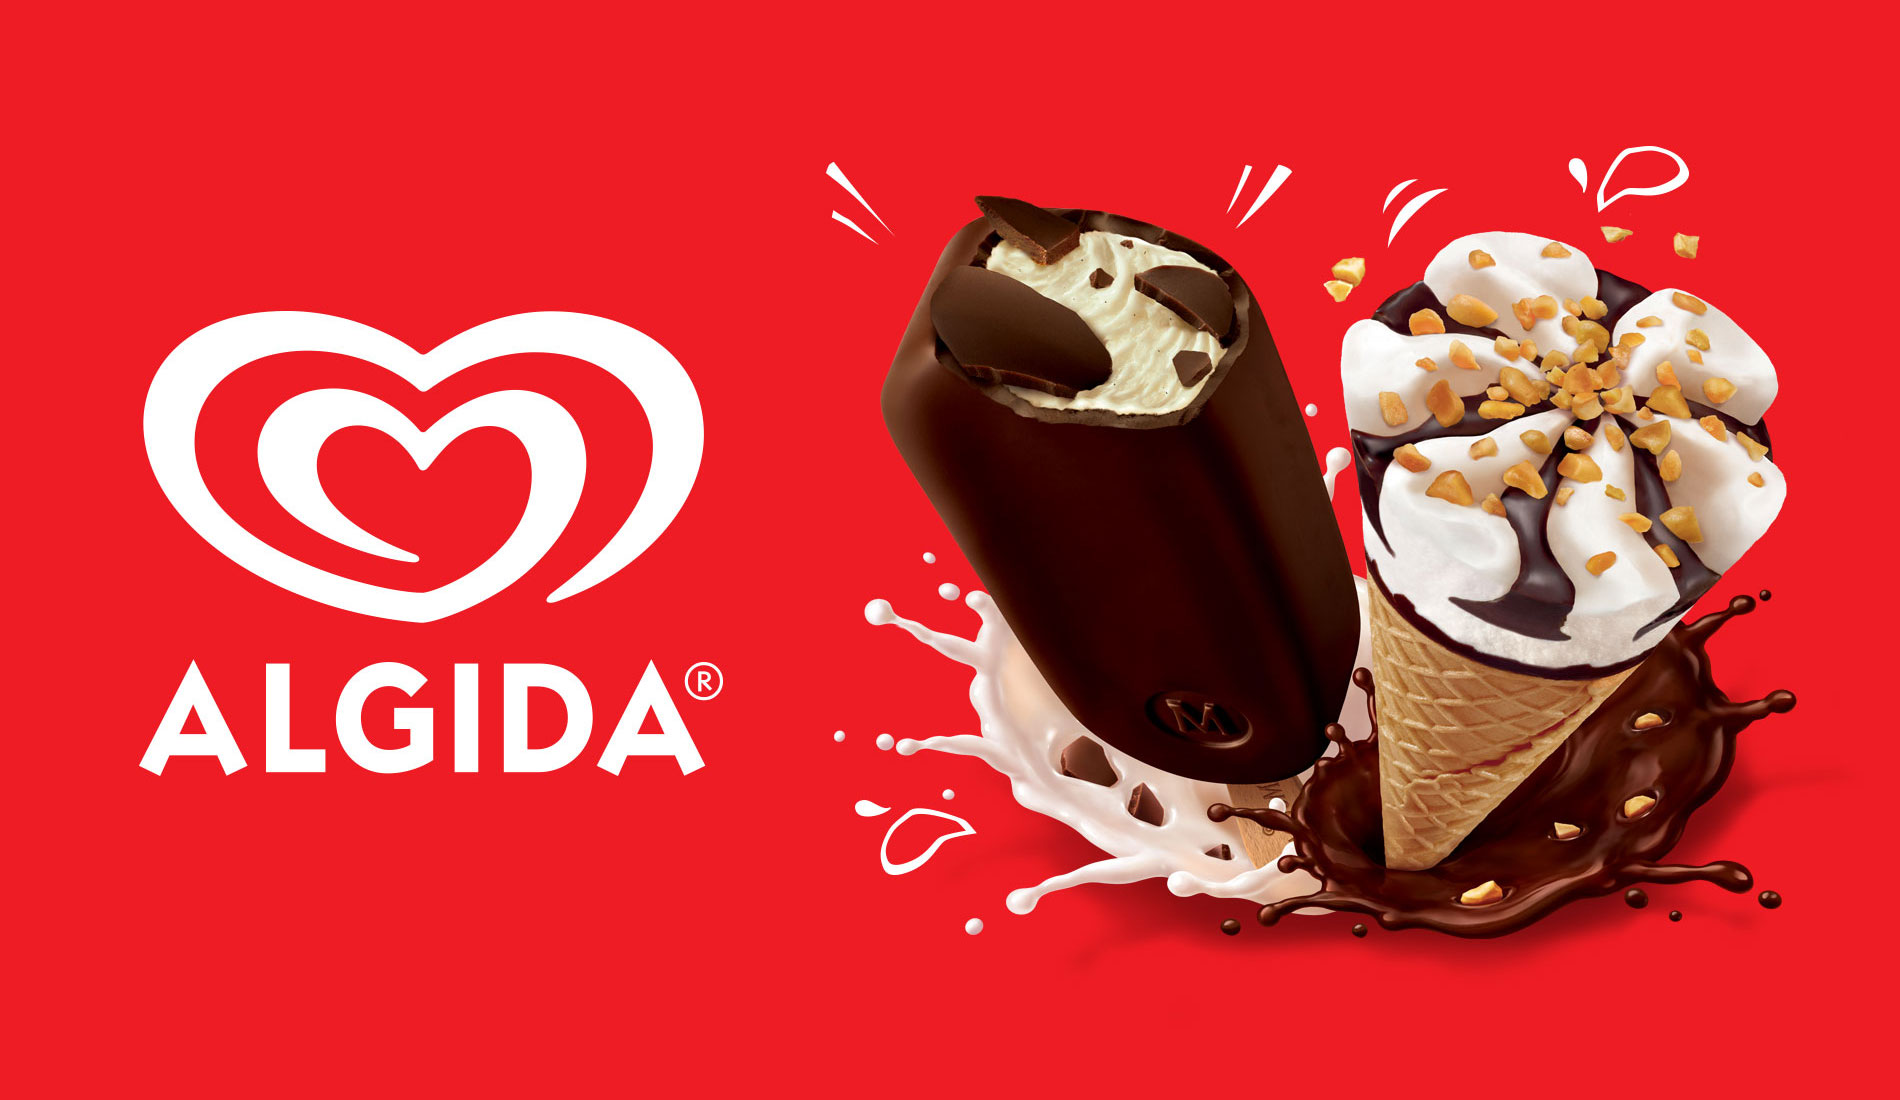 Concessionario gelati Algida per l'Ogliastra